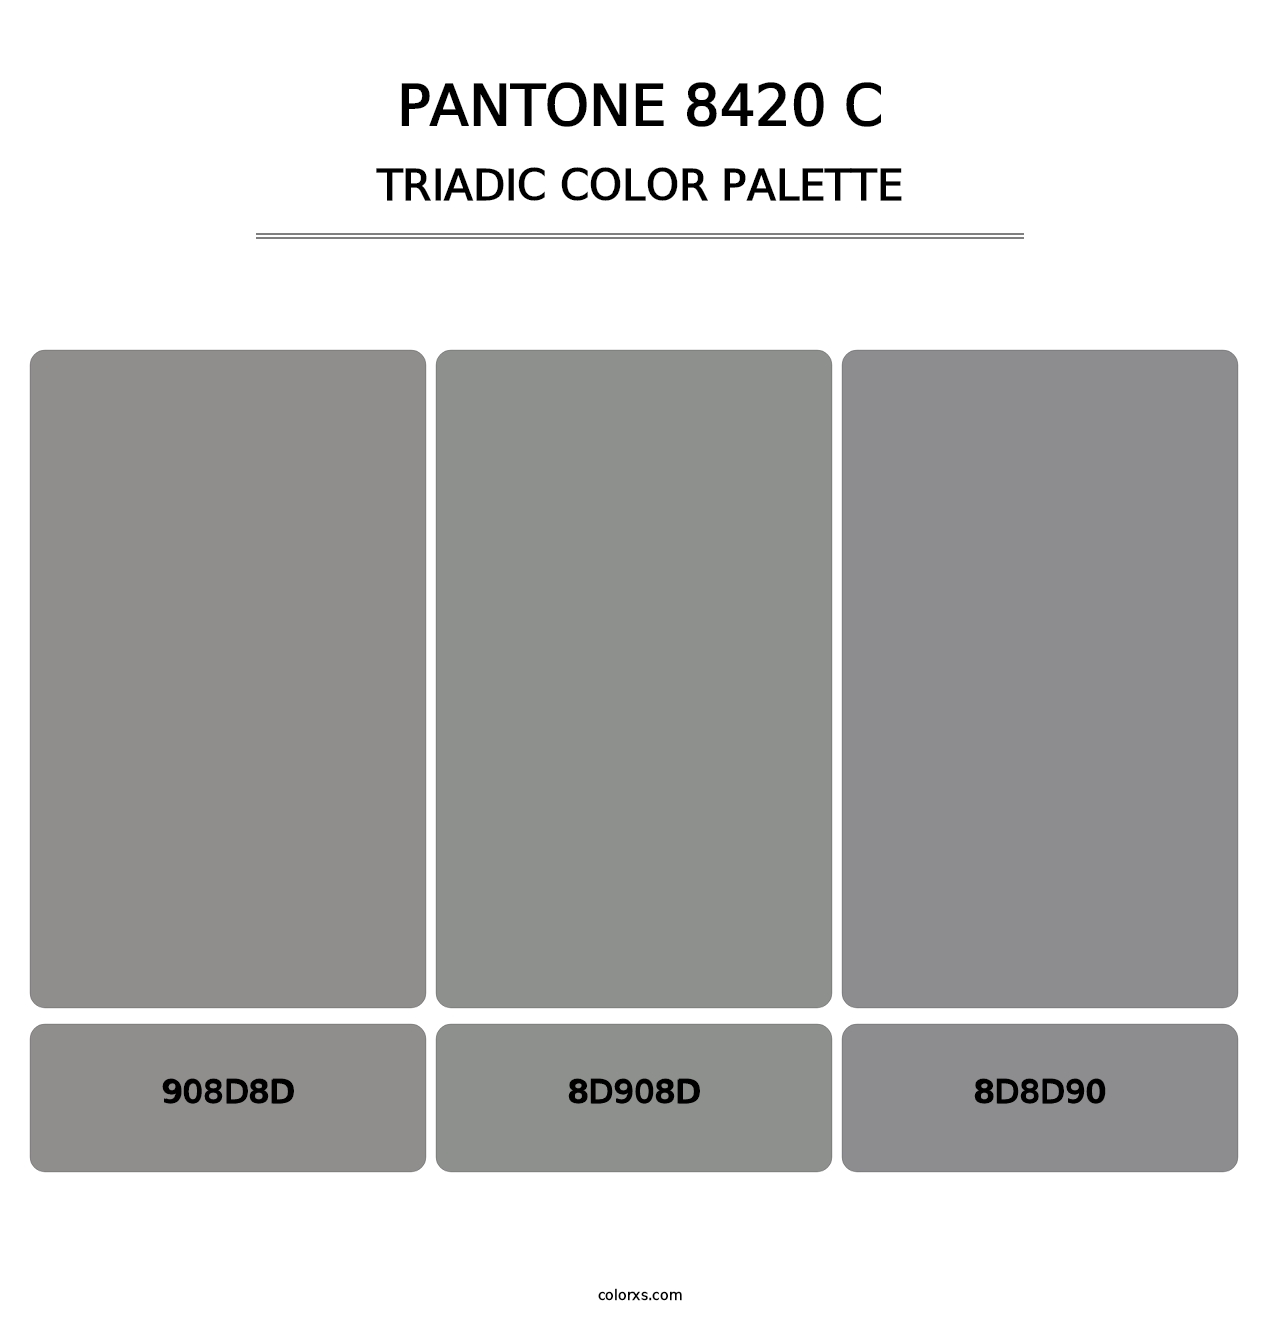 PANTONE 8420 C - Triadic Color Palette